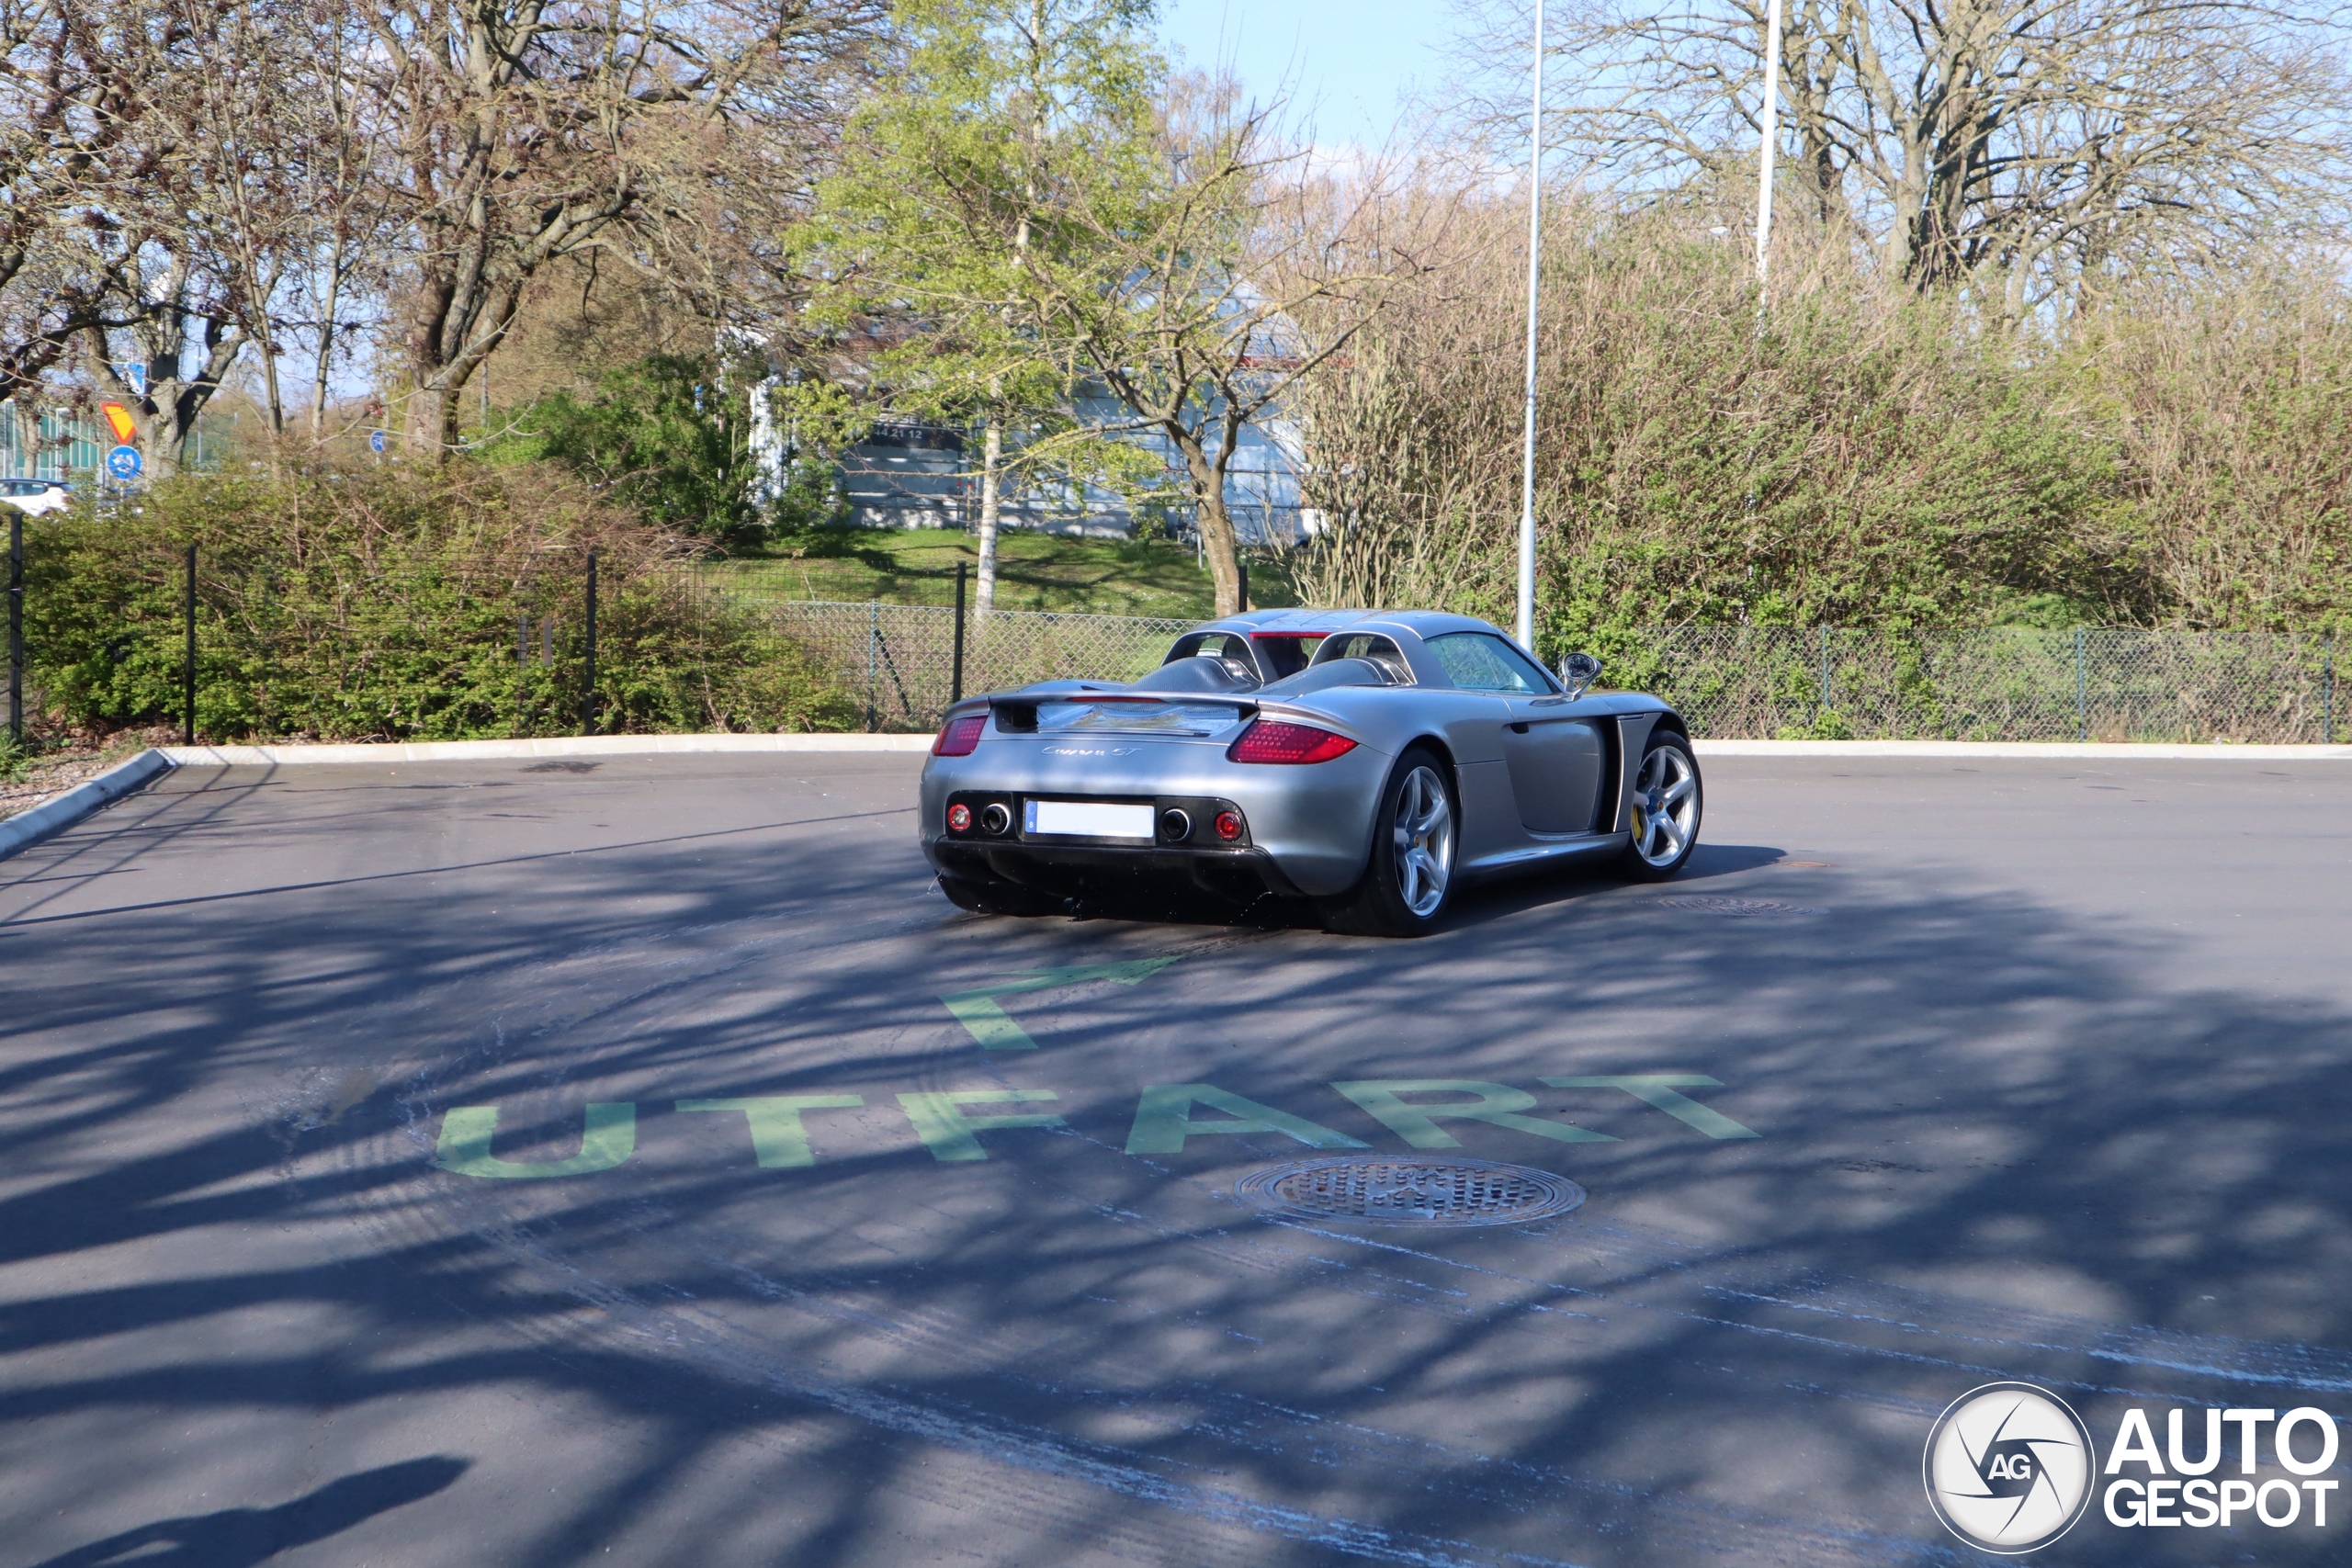 Seltene Sichtung: Ein Carrera GT in Schweden